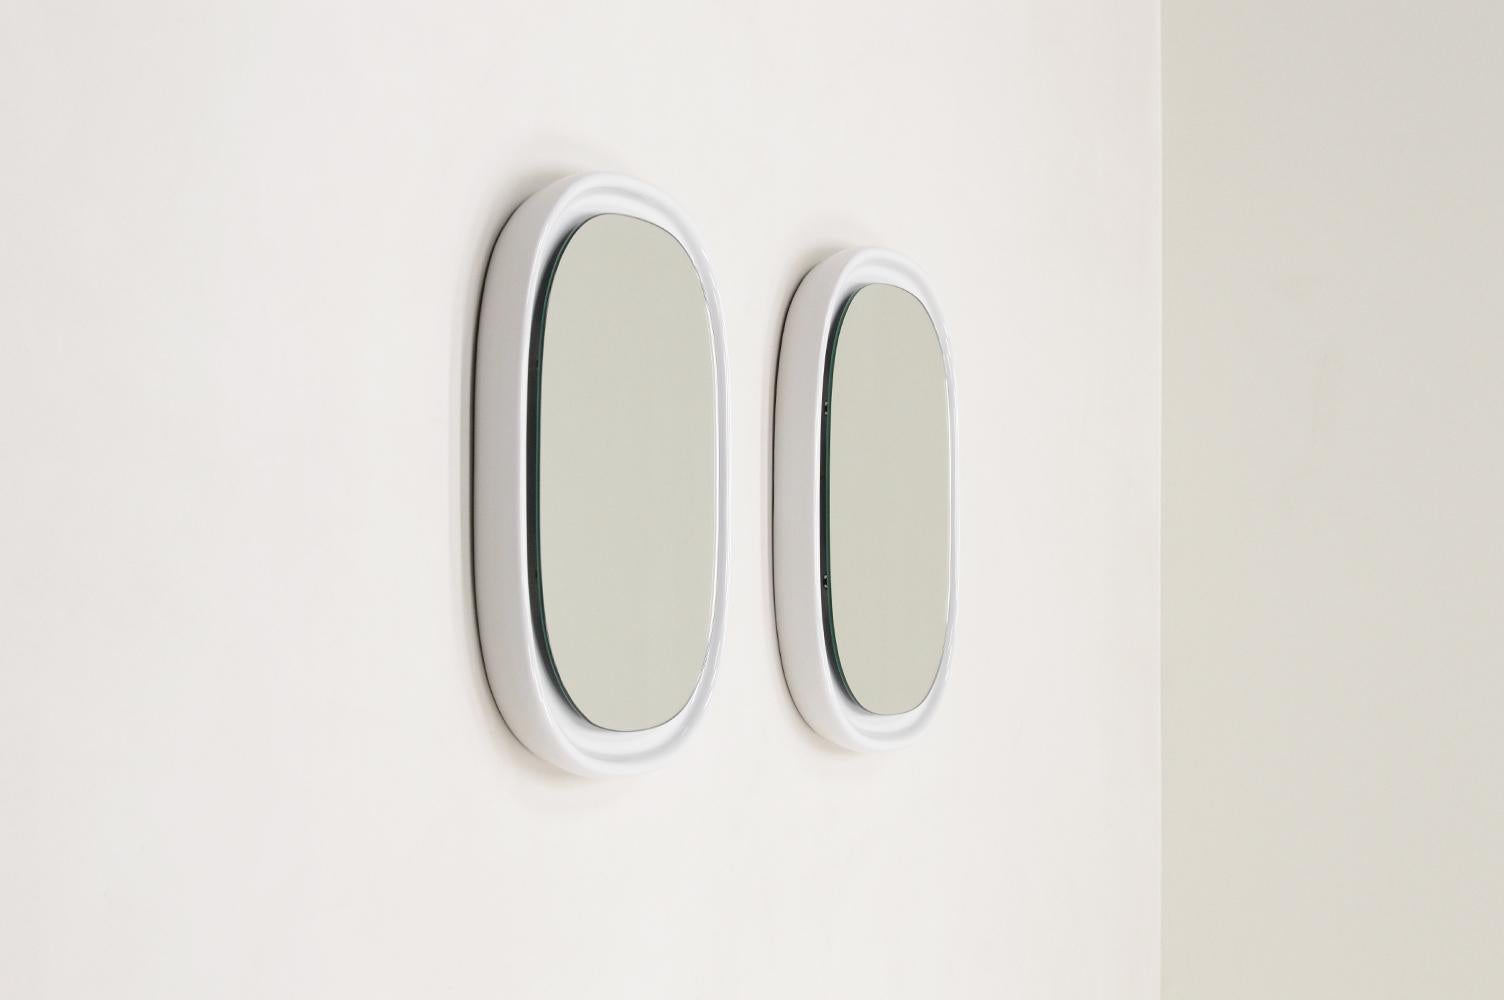 Satz von 2 weißen Keramikspiegeln von Sphinx Holland, 1970er Jahre Niederlande. Optisch schwebender Spiegel in weißer Keramik. Hochwertige und schwere Spiegel. Mit dem Logo auf der Rückseite gekennzeichnet. In sehr gutem Vintage-Zustand. 

